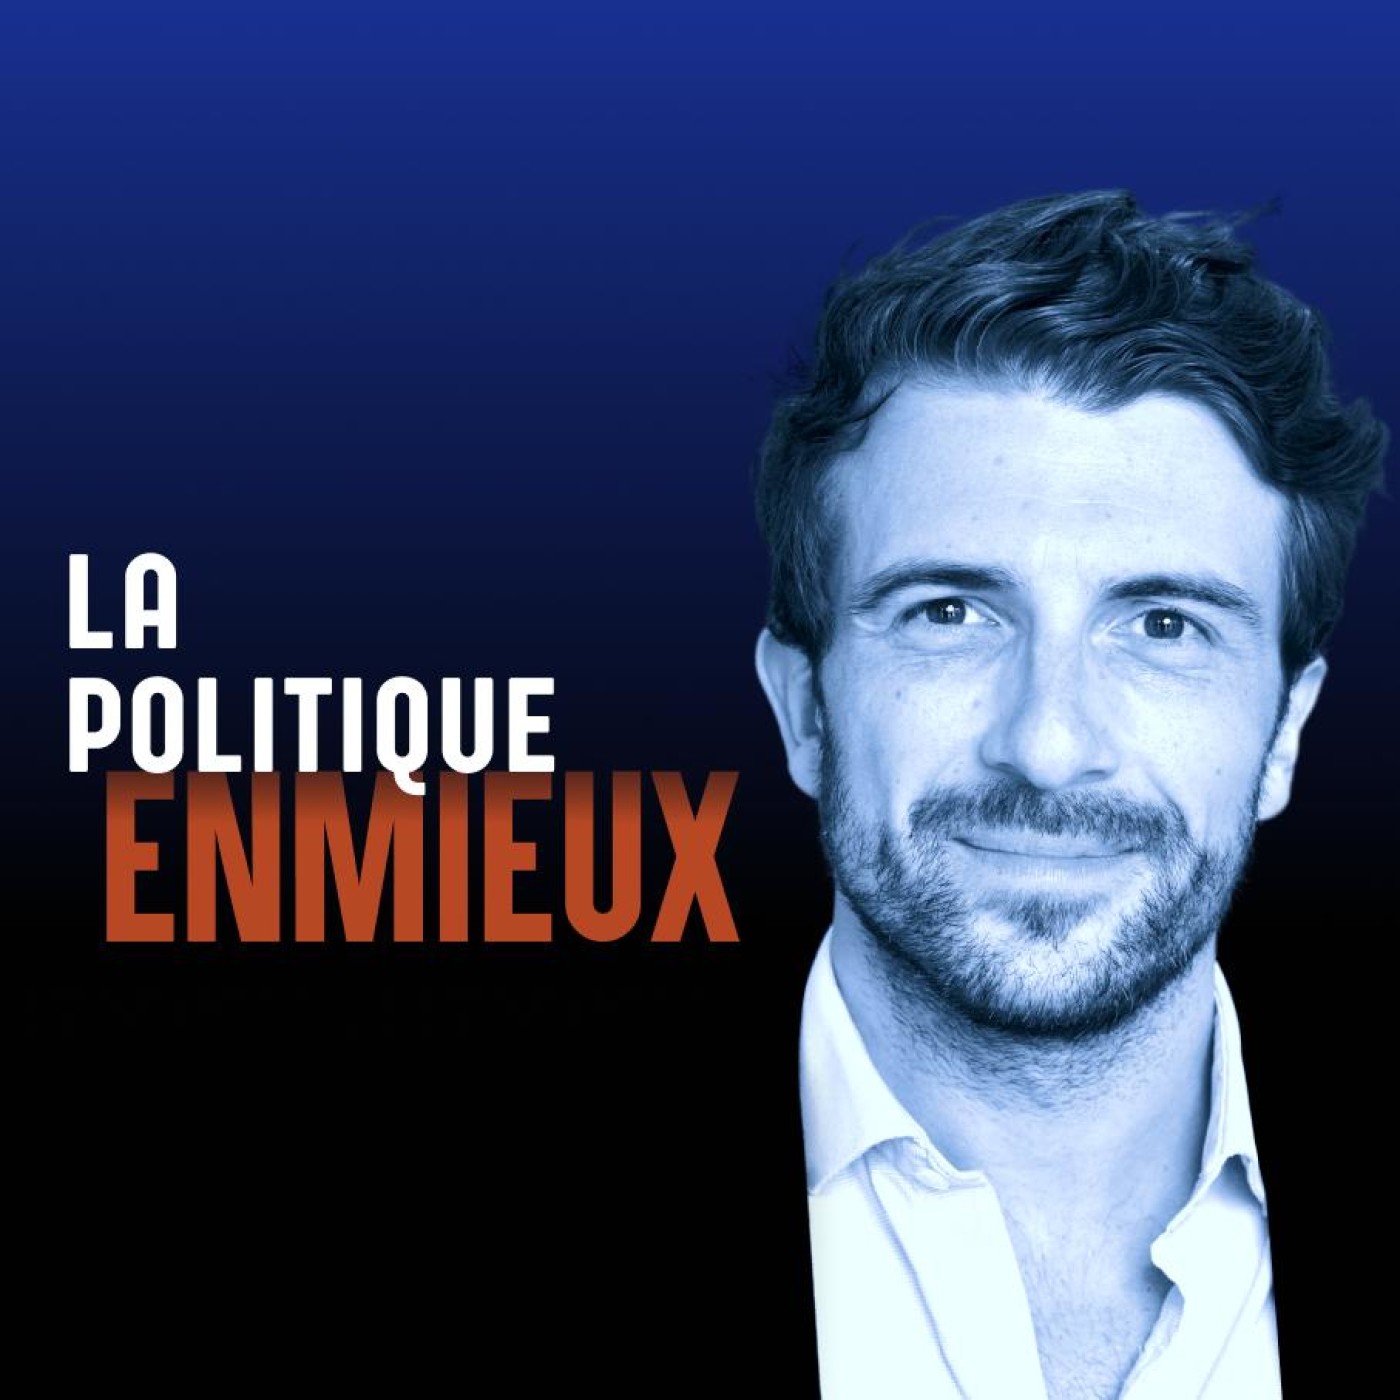 La politique en mieux:Artur Enmieux